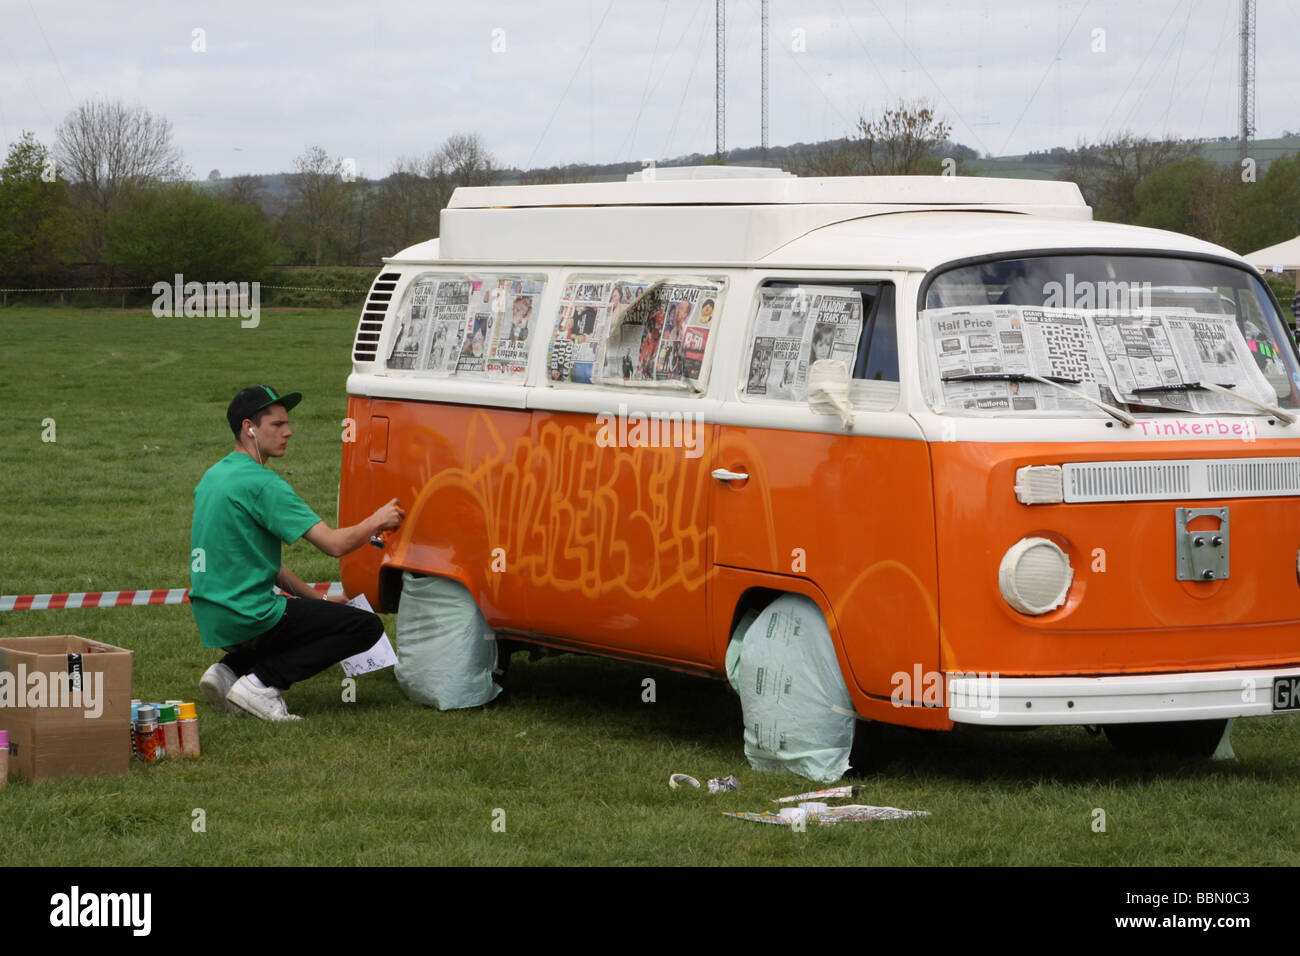 Orange et Blanc VW camper van étant pulvérisée avec graffiti Photo Stock -  Alamy